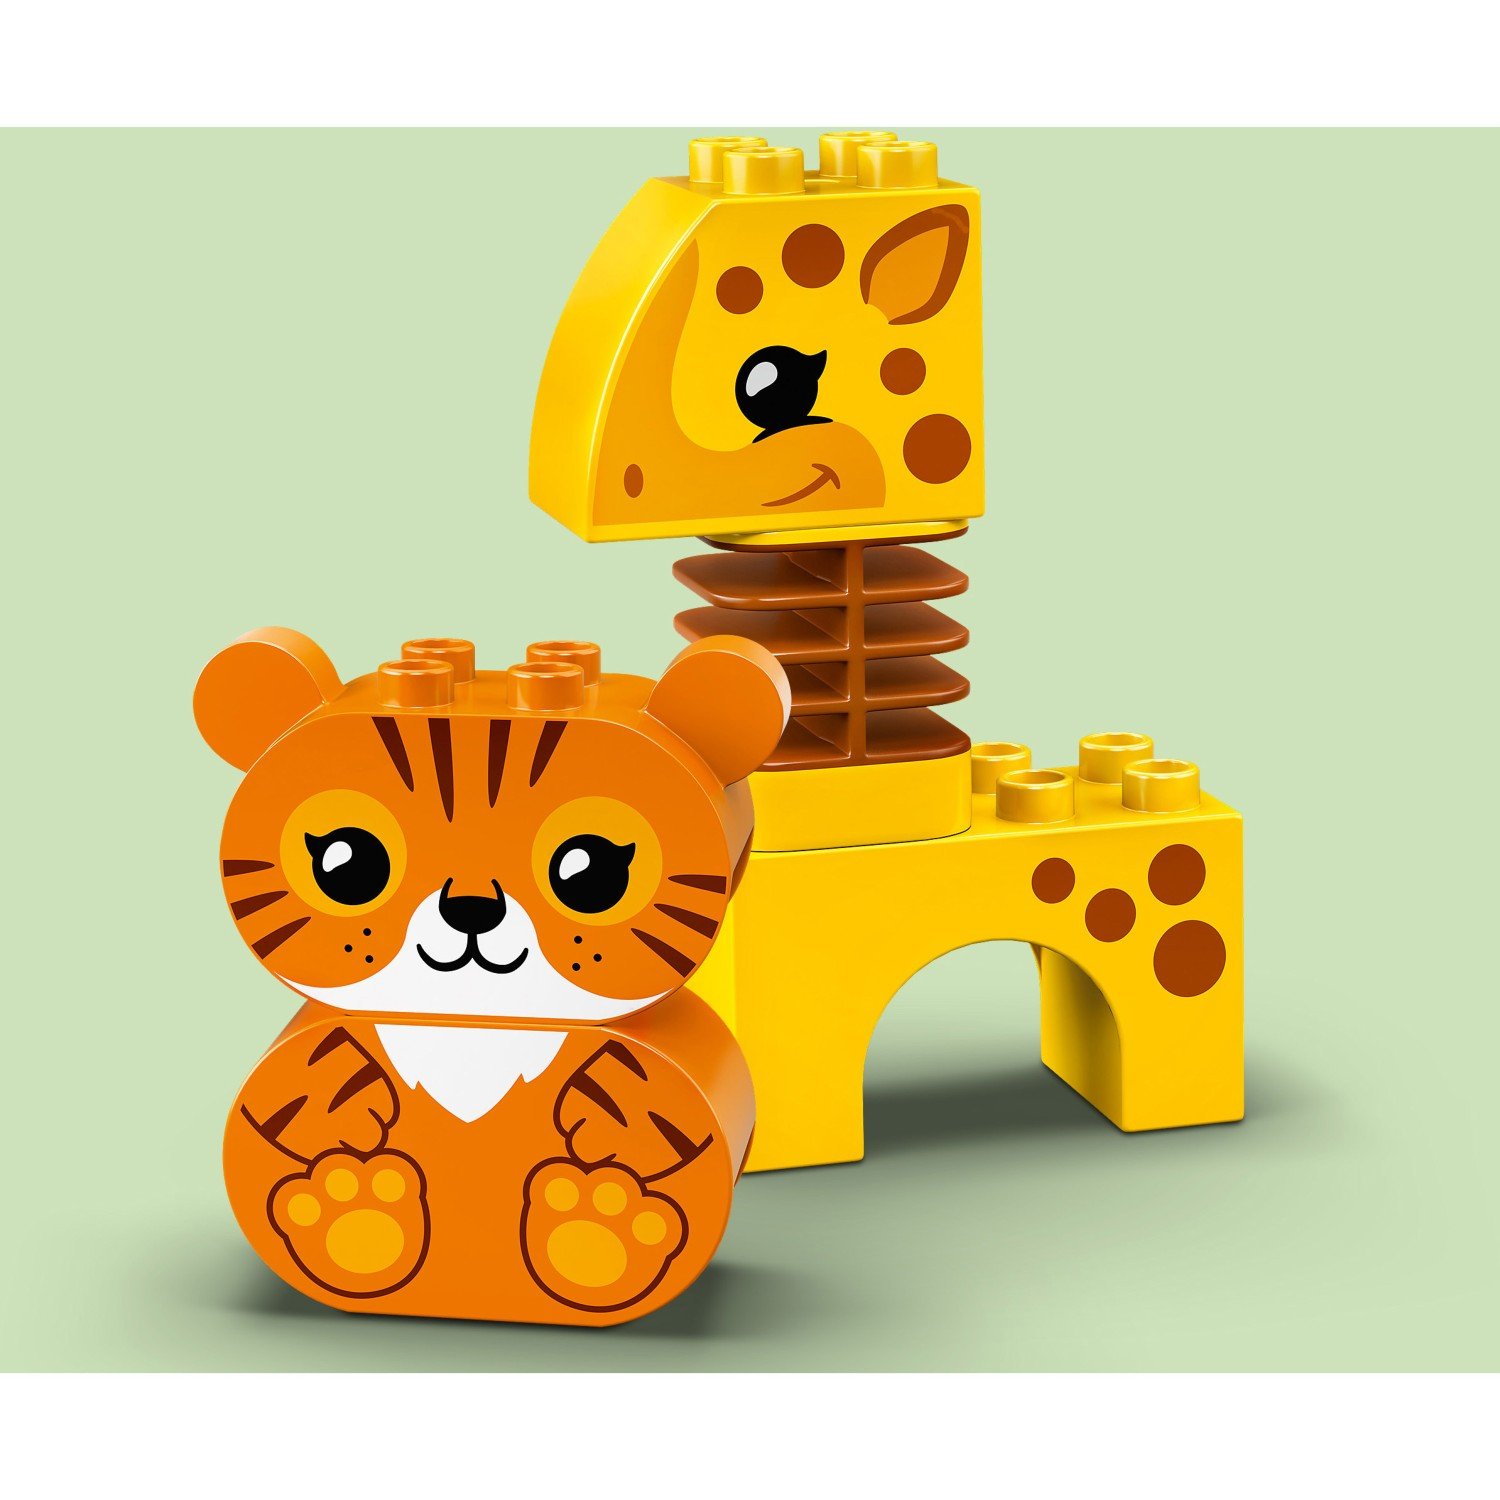 Lego Duplo 10955 Поезд для животных